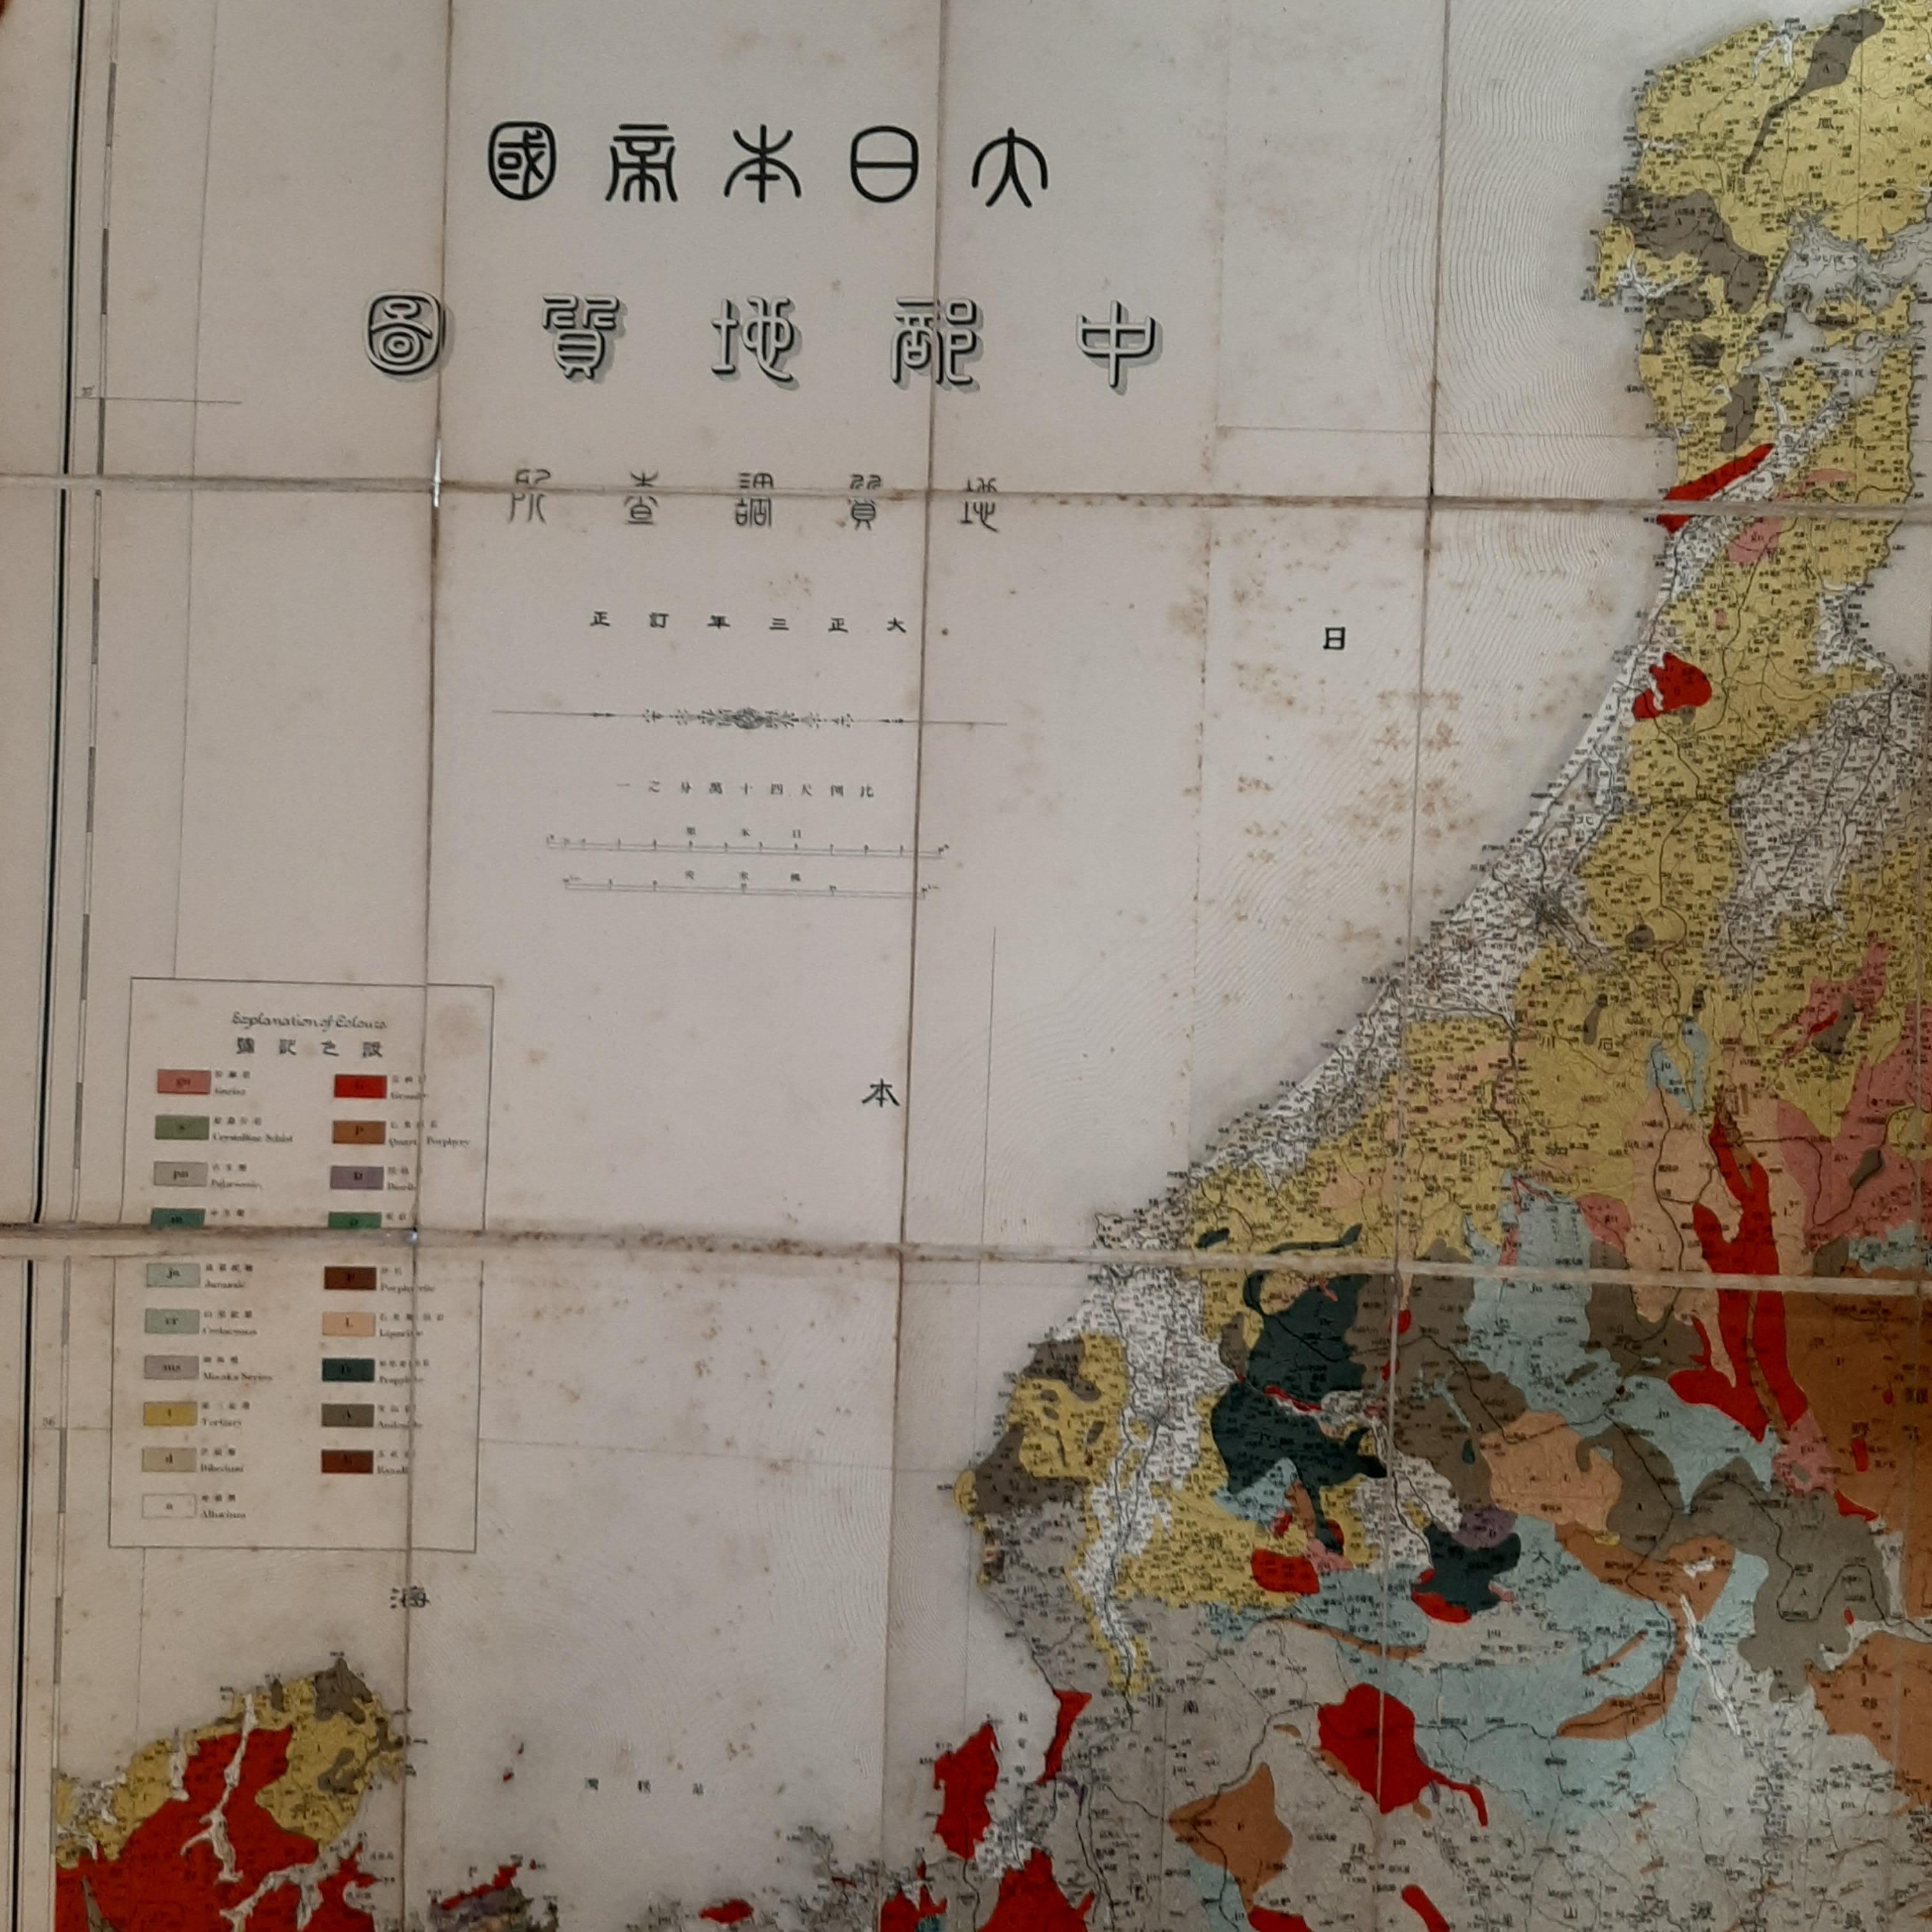 Mapa geológico plegable de la zona de Wakayama, Nara, Osaka, Mie y Shiga en Japón, hacia 1880:

Este mapa es un mapa geológico plegable, lo que significa que se diseñó para que fuera portátil y fácil de utilizar sobre el terreno. Creada hacia 1880,